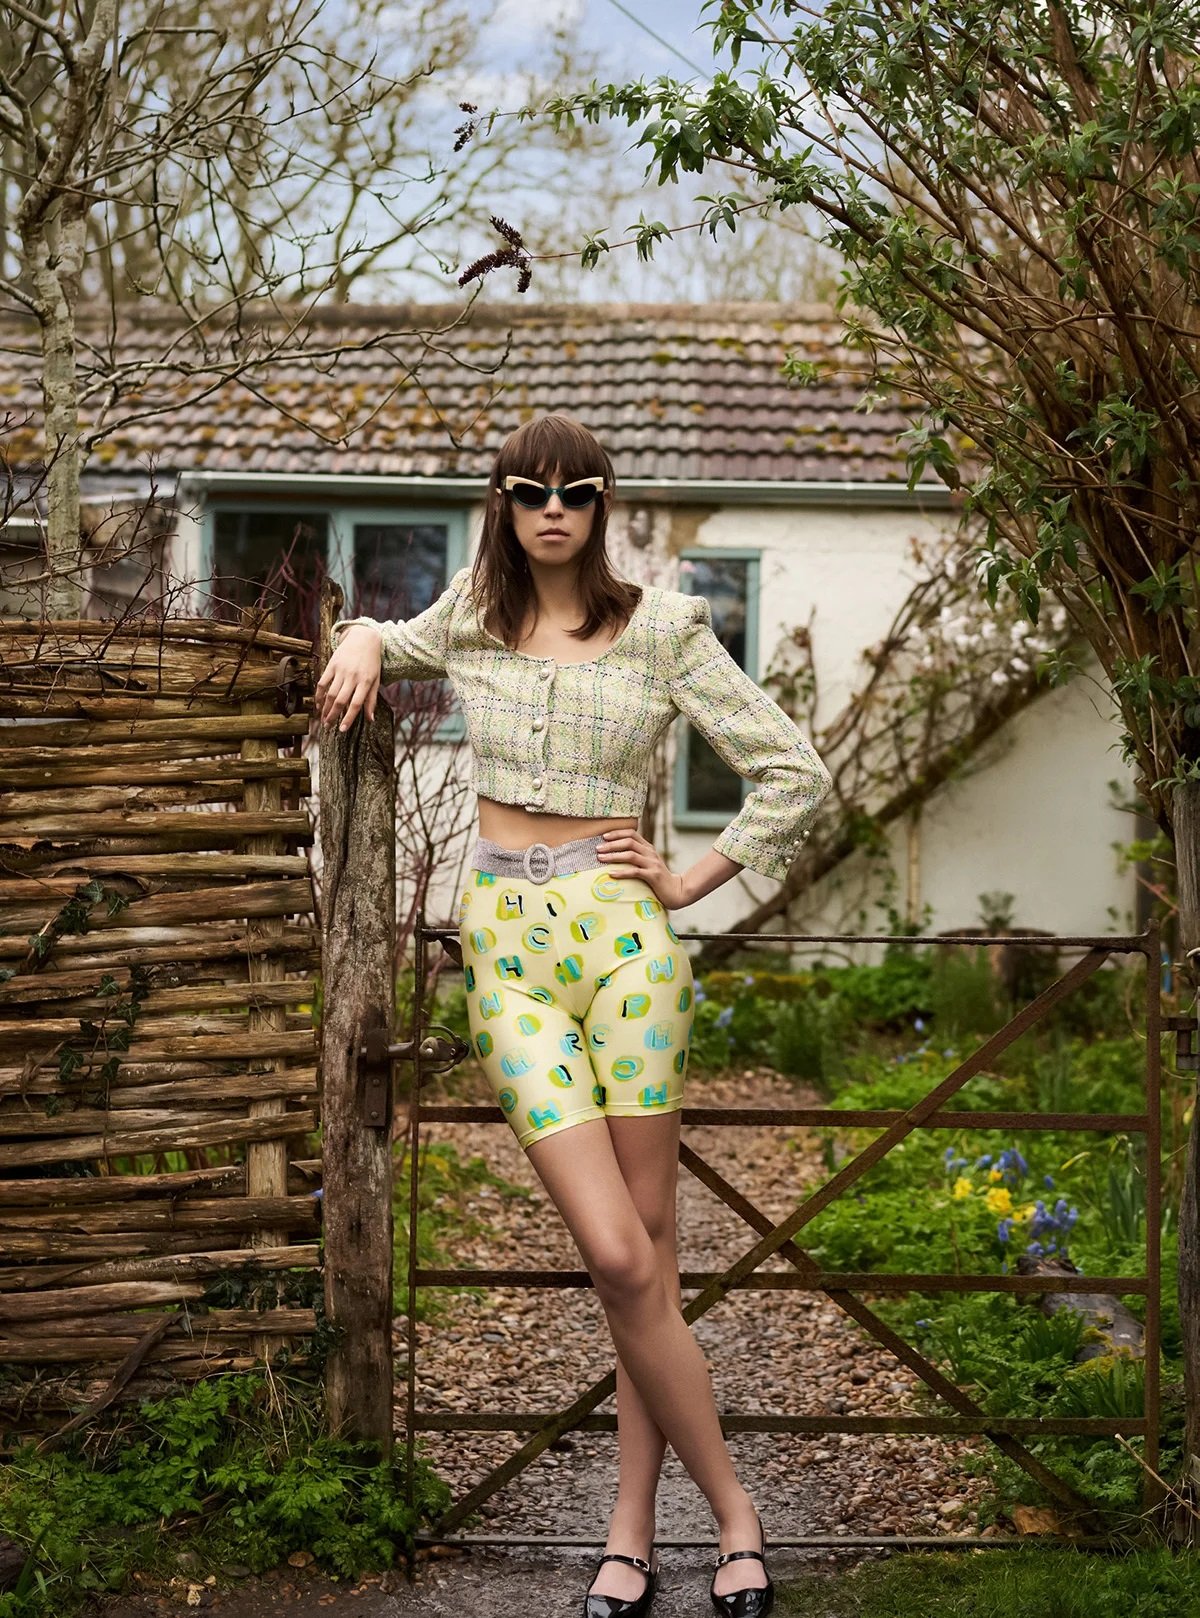 Vaughan-Ollier-by-Lynette-Garland-for-Harpers-Bazaar-UK-May-2022-14.jpg